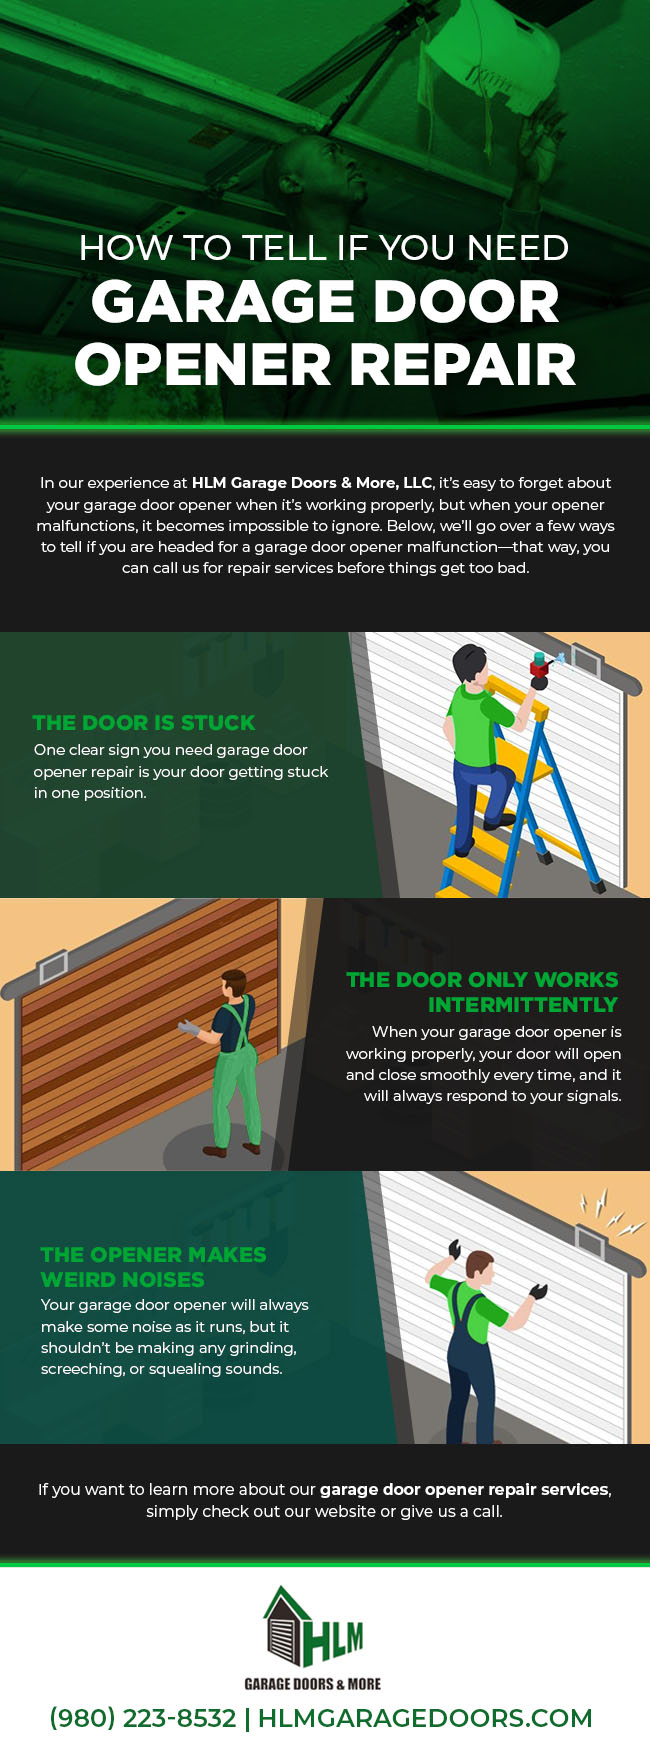 How to Tell if You Need Garage Door Opener Repair